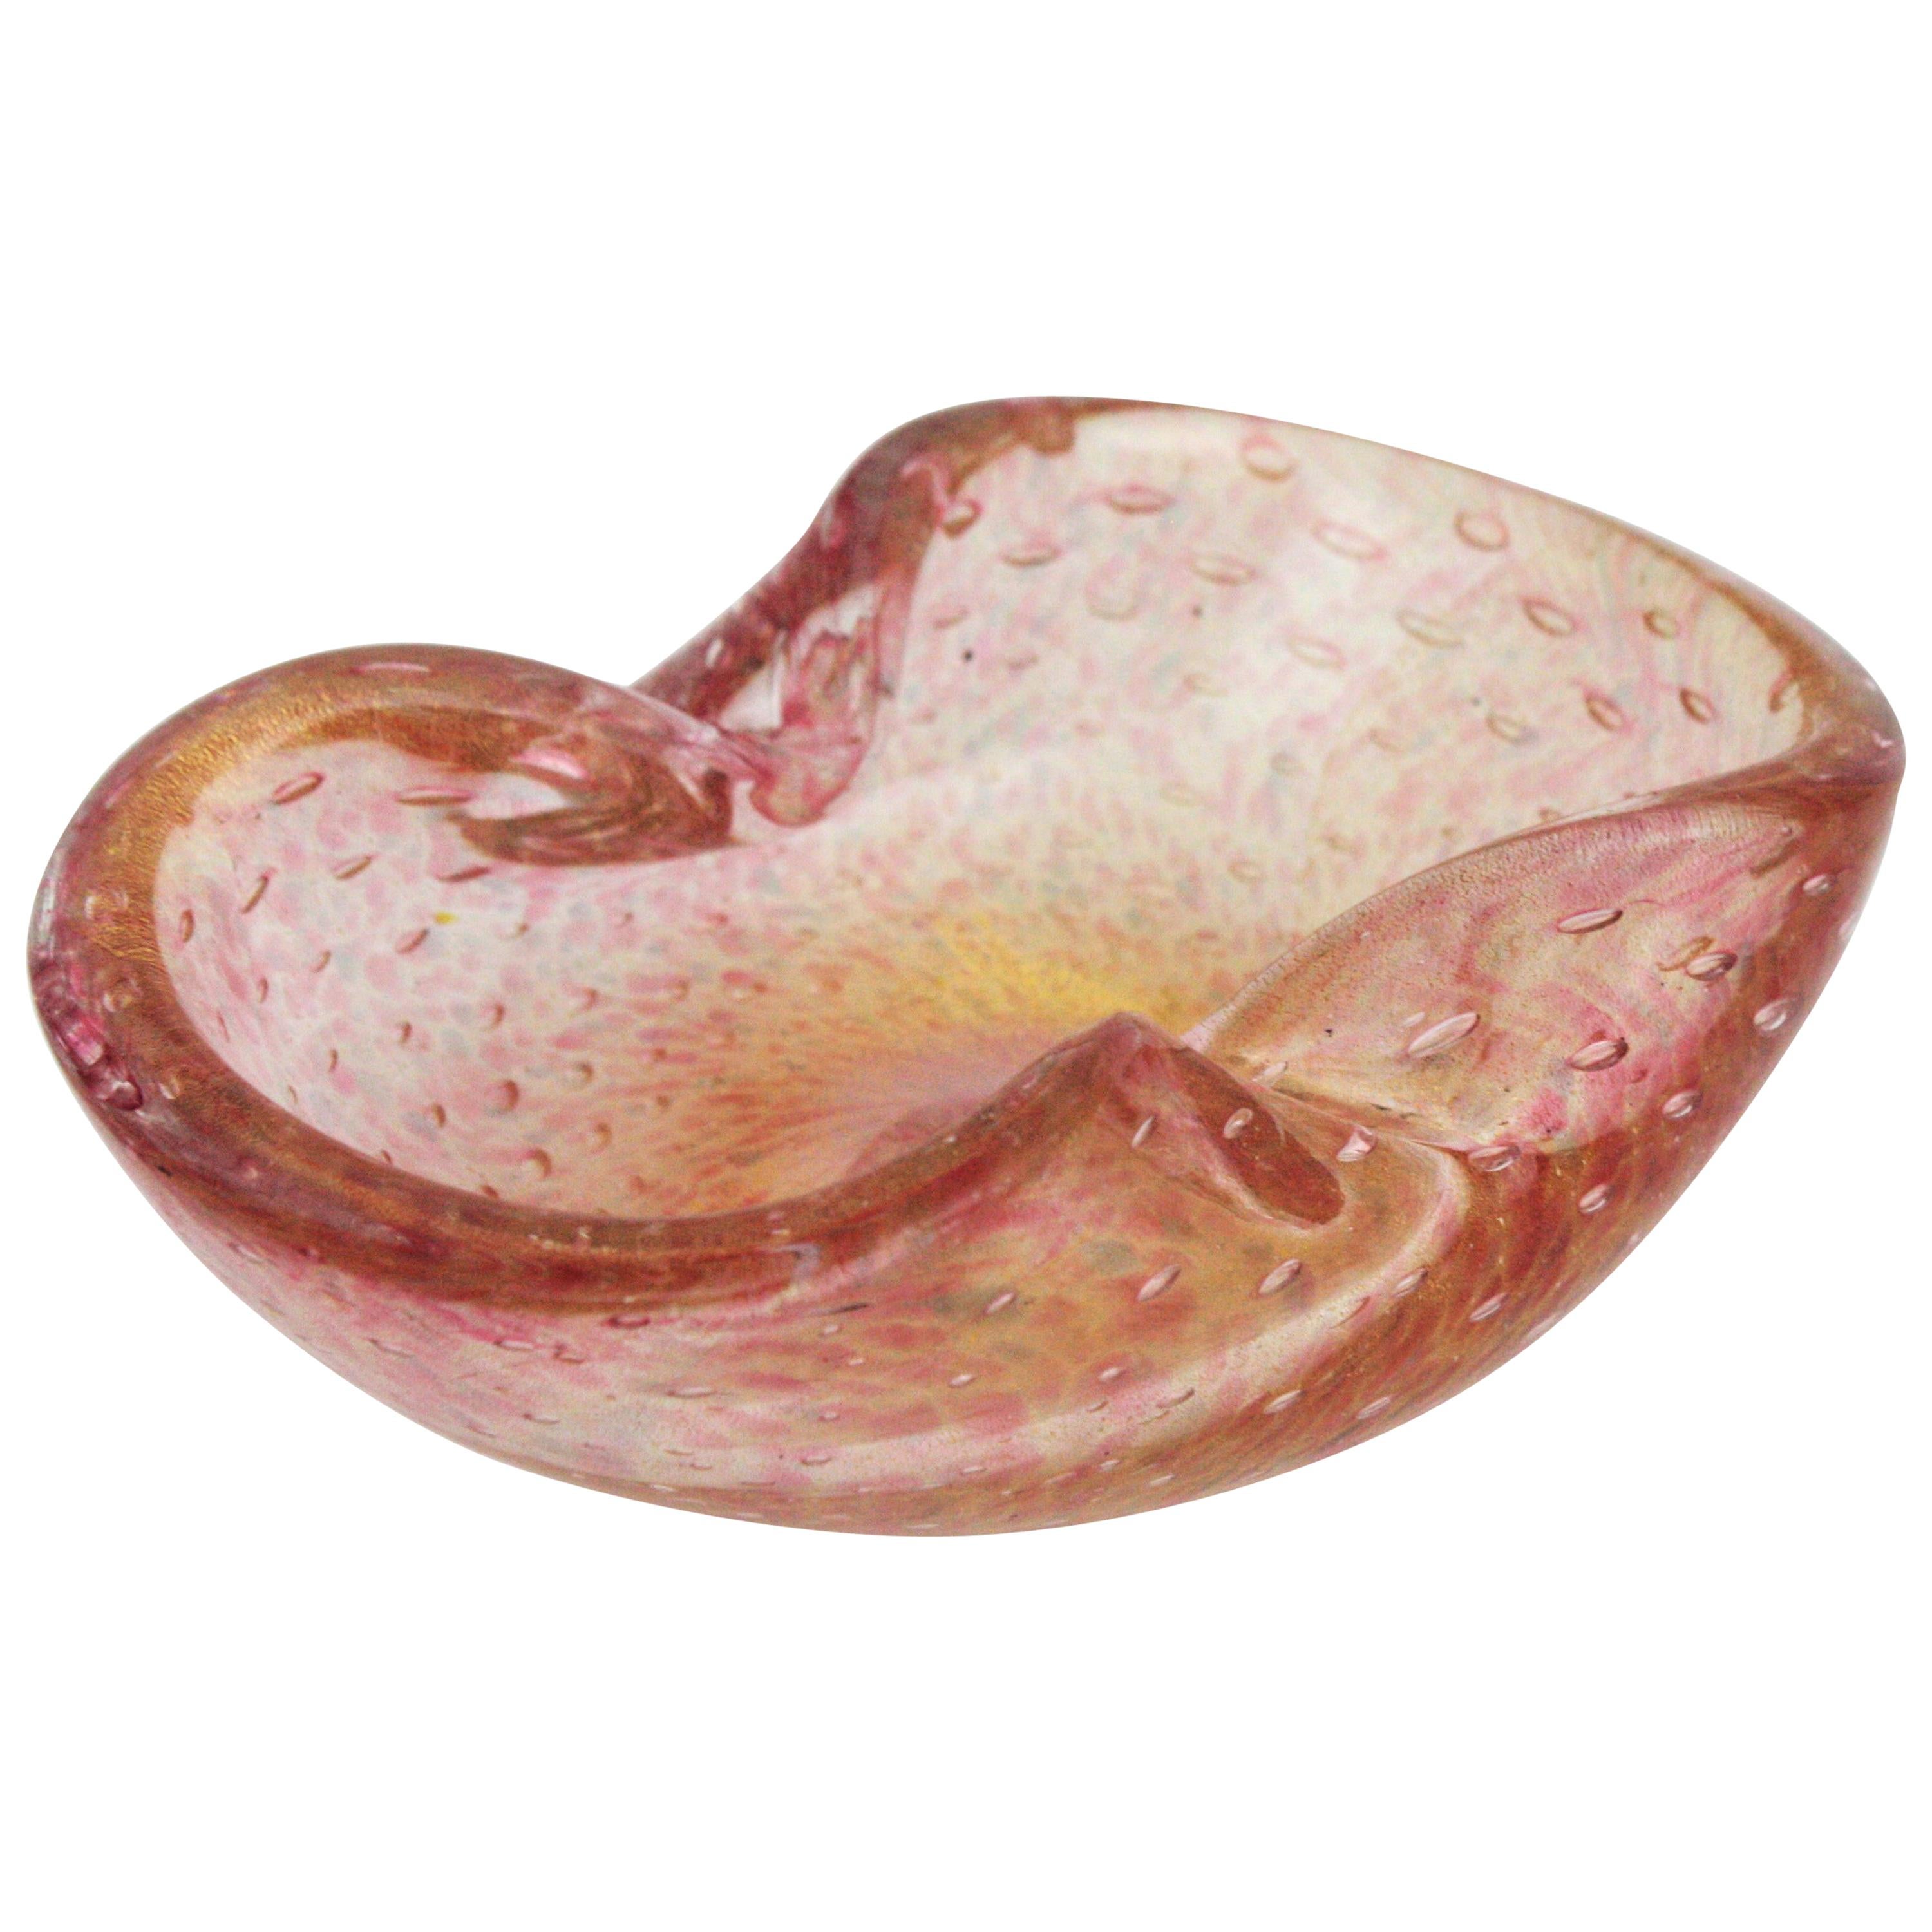 Incroyable cendrier / bol en verre de Murano soufflé à la main avec des mouchetures d'or et des bulles d'air contrôlées. Attribué à Barovier&Toso. Italie, années 1950.
Taches de verre rose et gris et verre transparent. Il est doté de centaines de